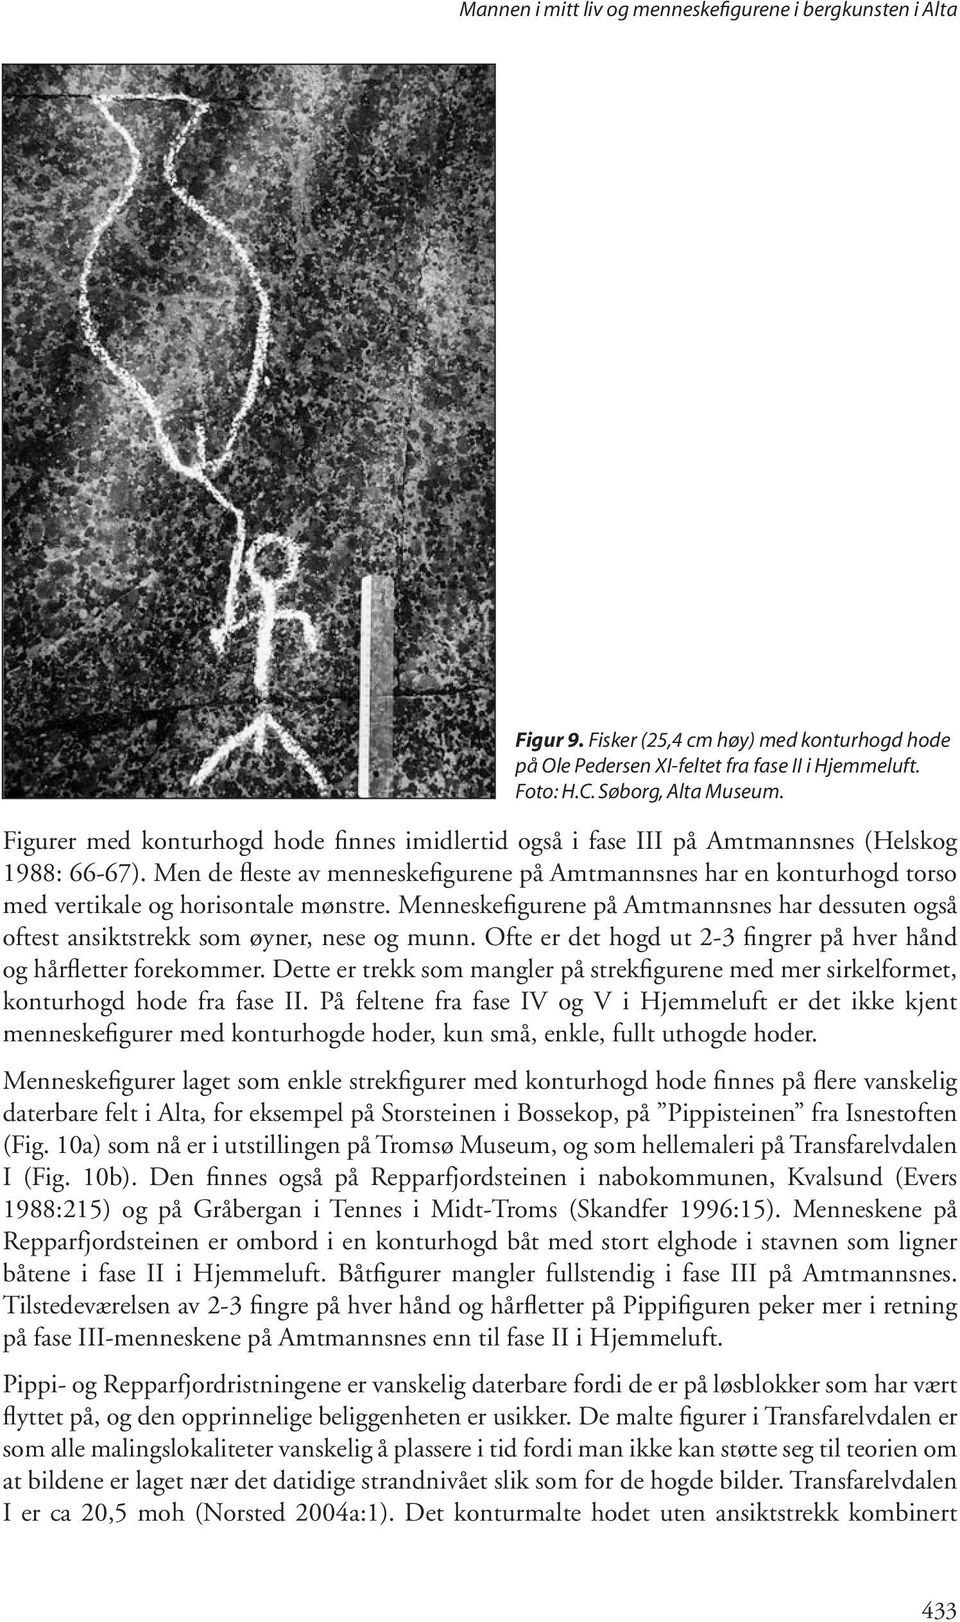 Men de fleste av menneskefigurene på Amtmannsnes har en konturhogd torso med vertikale og horisontale mønstre.